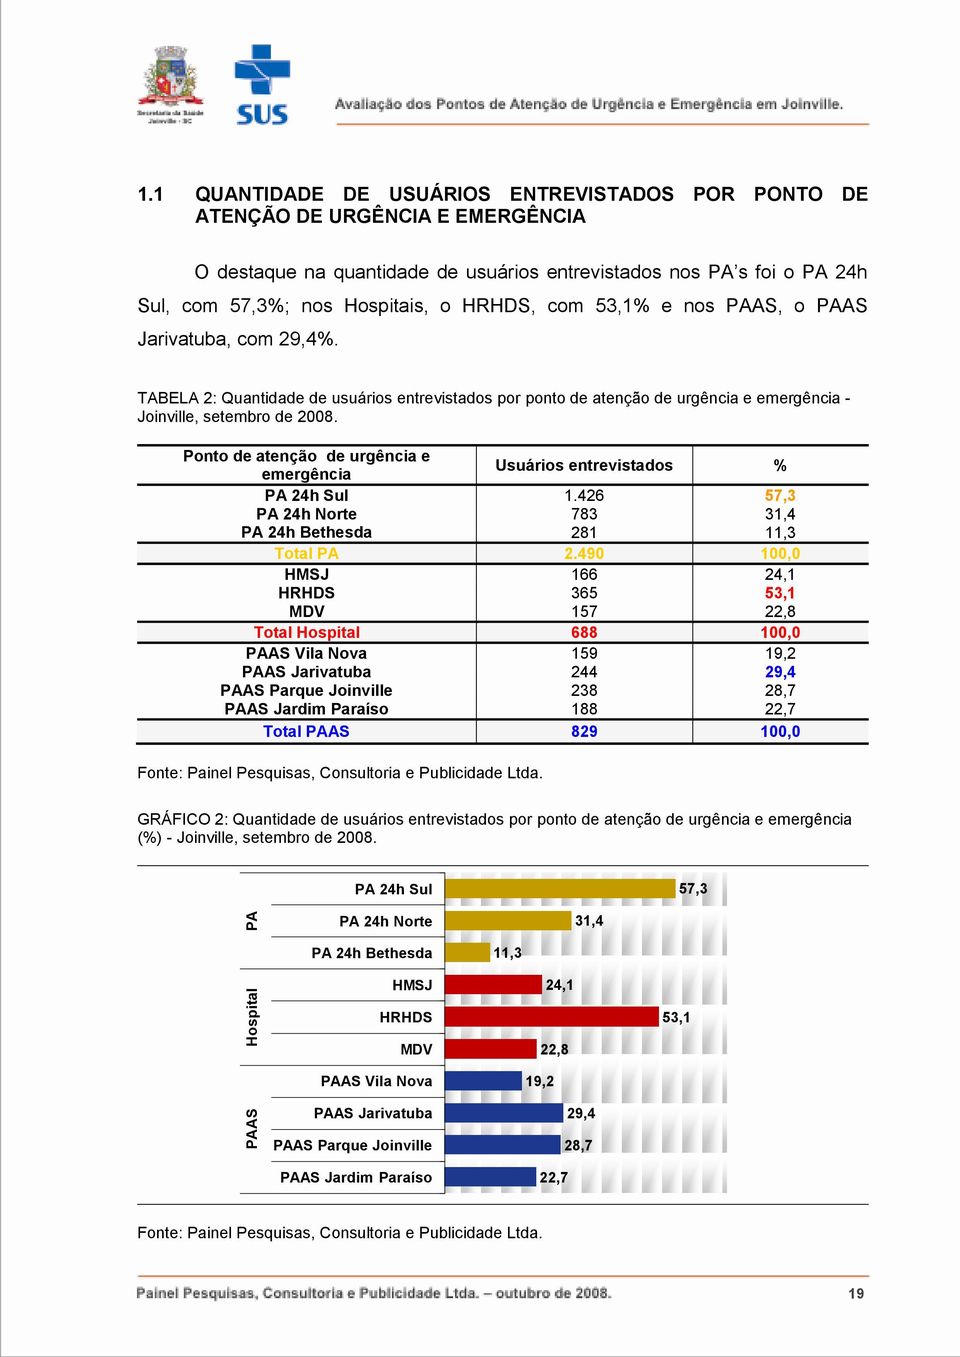 com 53,1% e nos PAAS, o PAAS Jarivatuba, com 29,4%. TABELA 2: Quantidade de usuários entrevistados por ponto de atenção de urgência e emergência - Joinville, setembro de 2008.